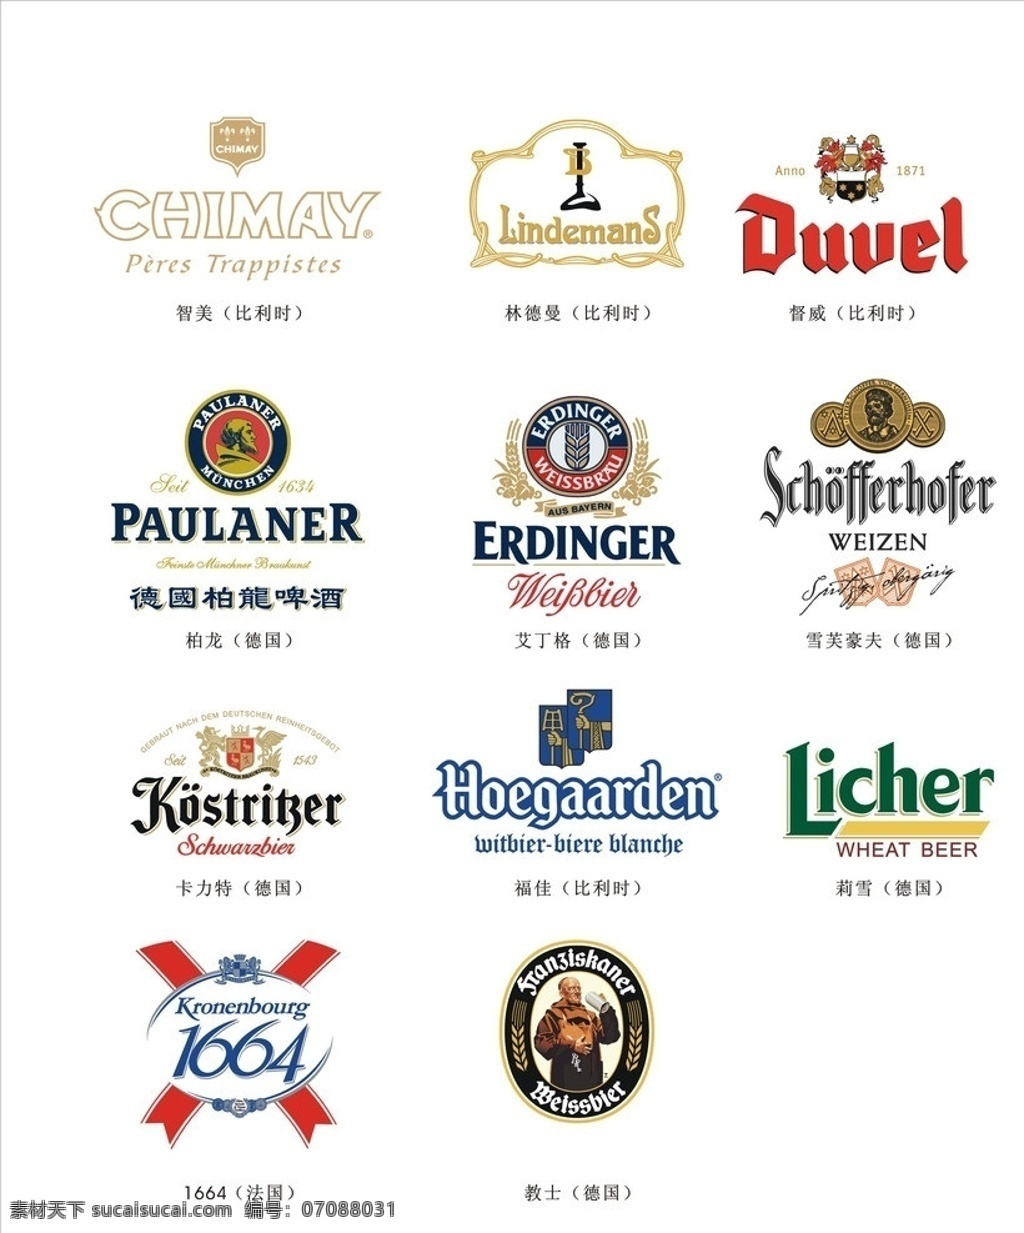 原装进口 啤酒 logo 进口啤酒 啤酒logo 德国啤酒 啤酒商标 啤酒矢量图 产品商标 企业 标志 标识标志图标 矢量